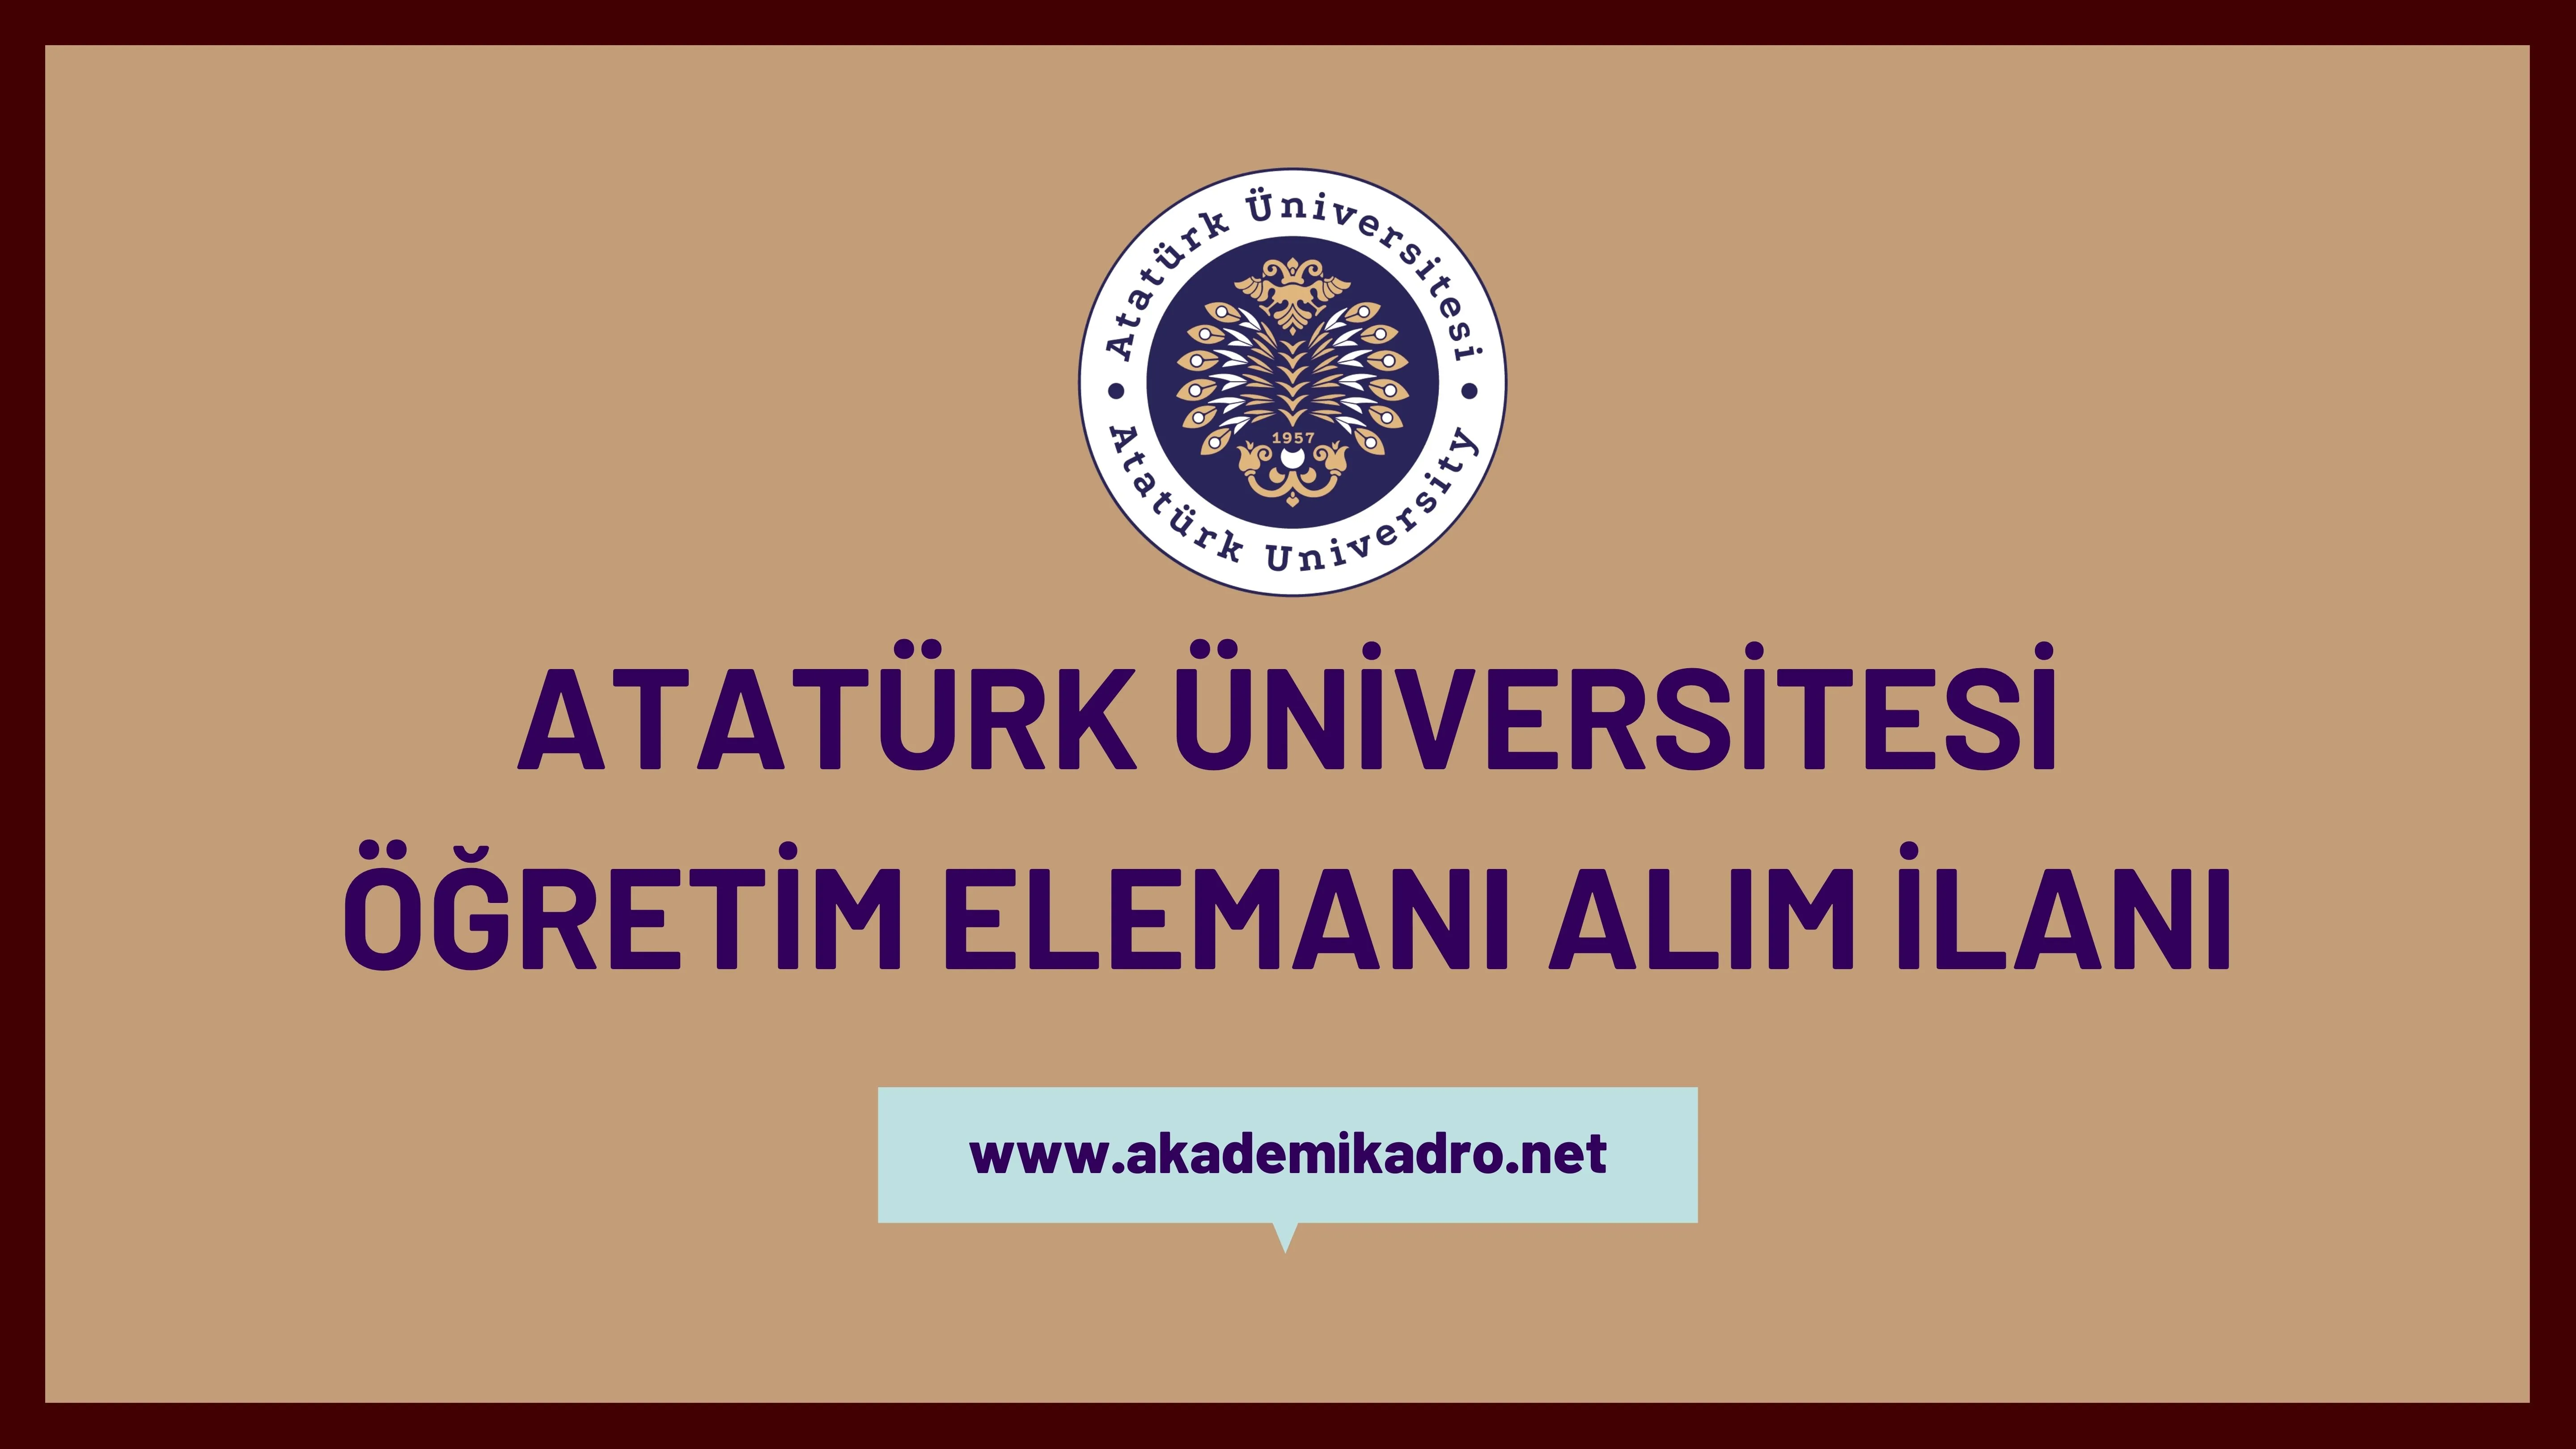 Atatürk Üniversitesi 26 Araştırma görevlisi ve 33 Öğretim üyesi alacak.